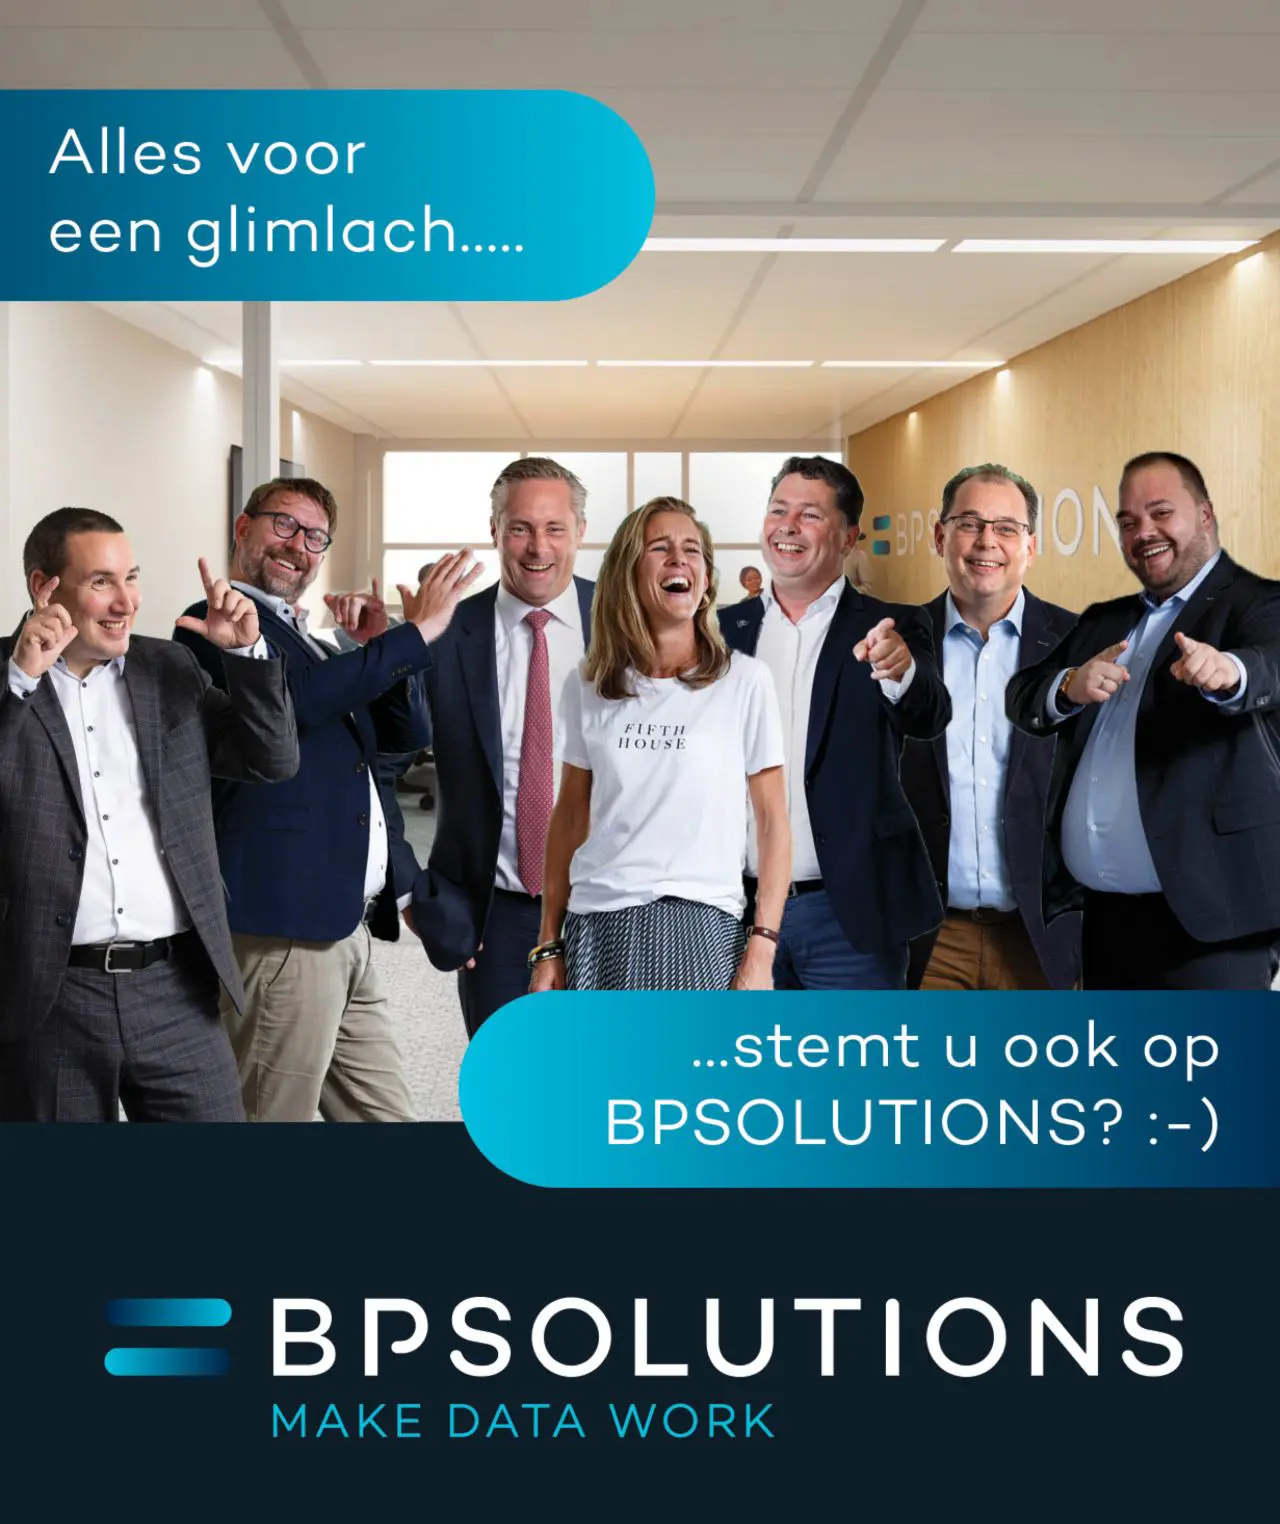 BPSOLUTIONS genomineerd voor 2 Dutch IT Awards